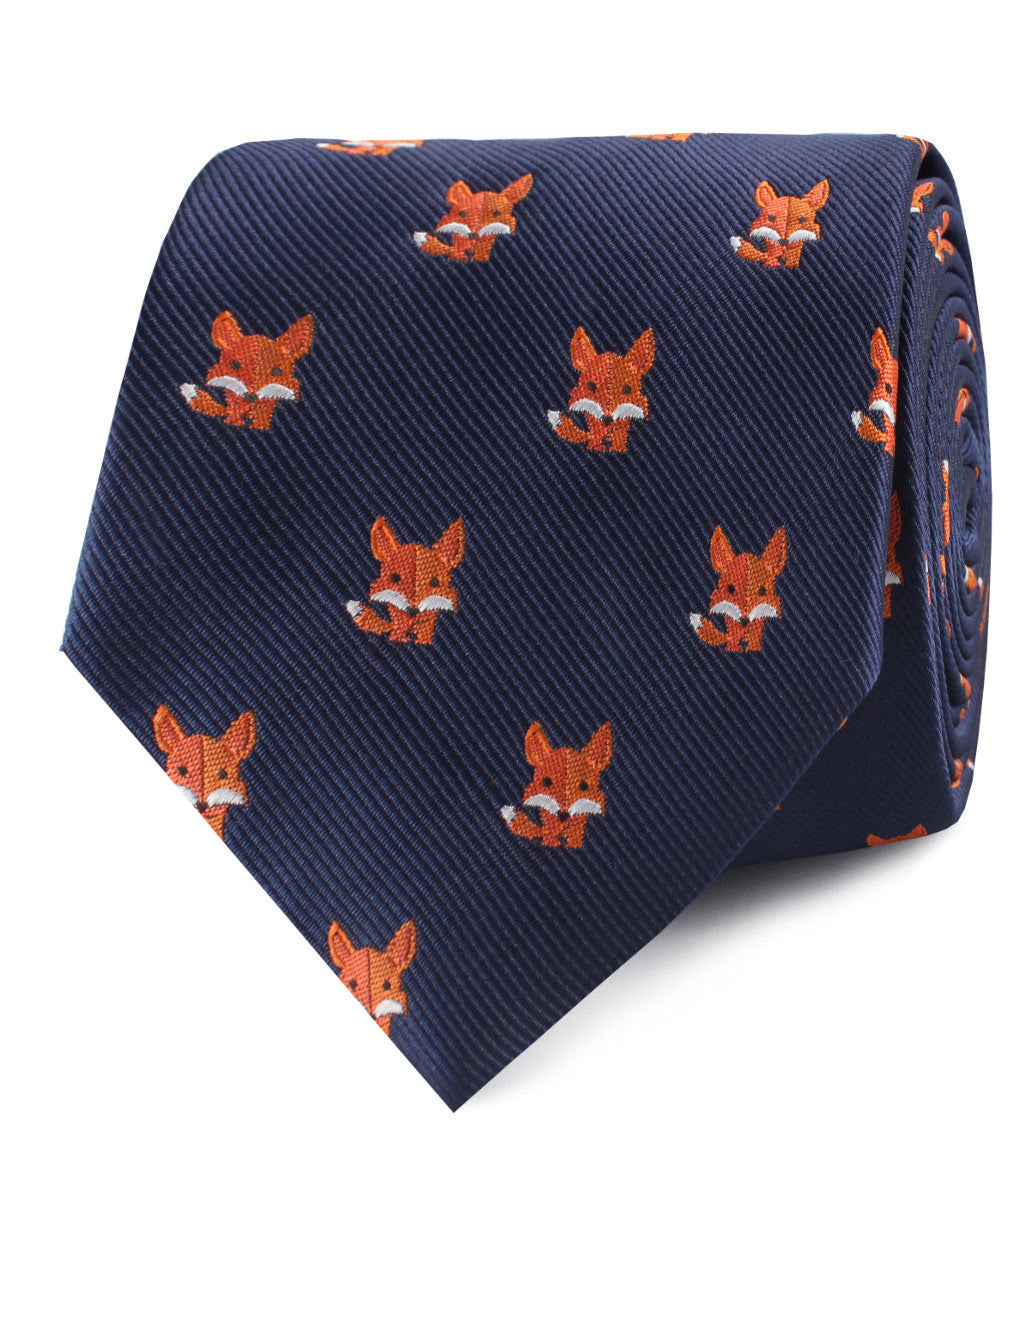 North American Kit Fox Necktie